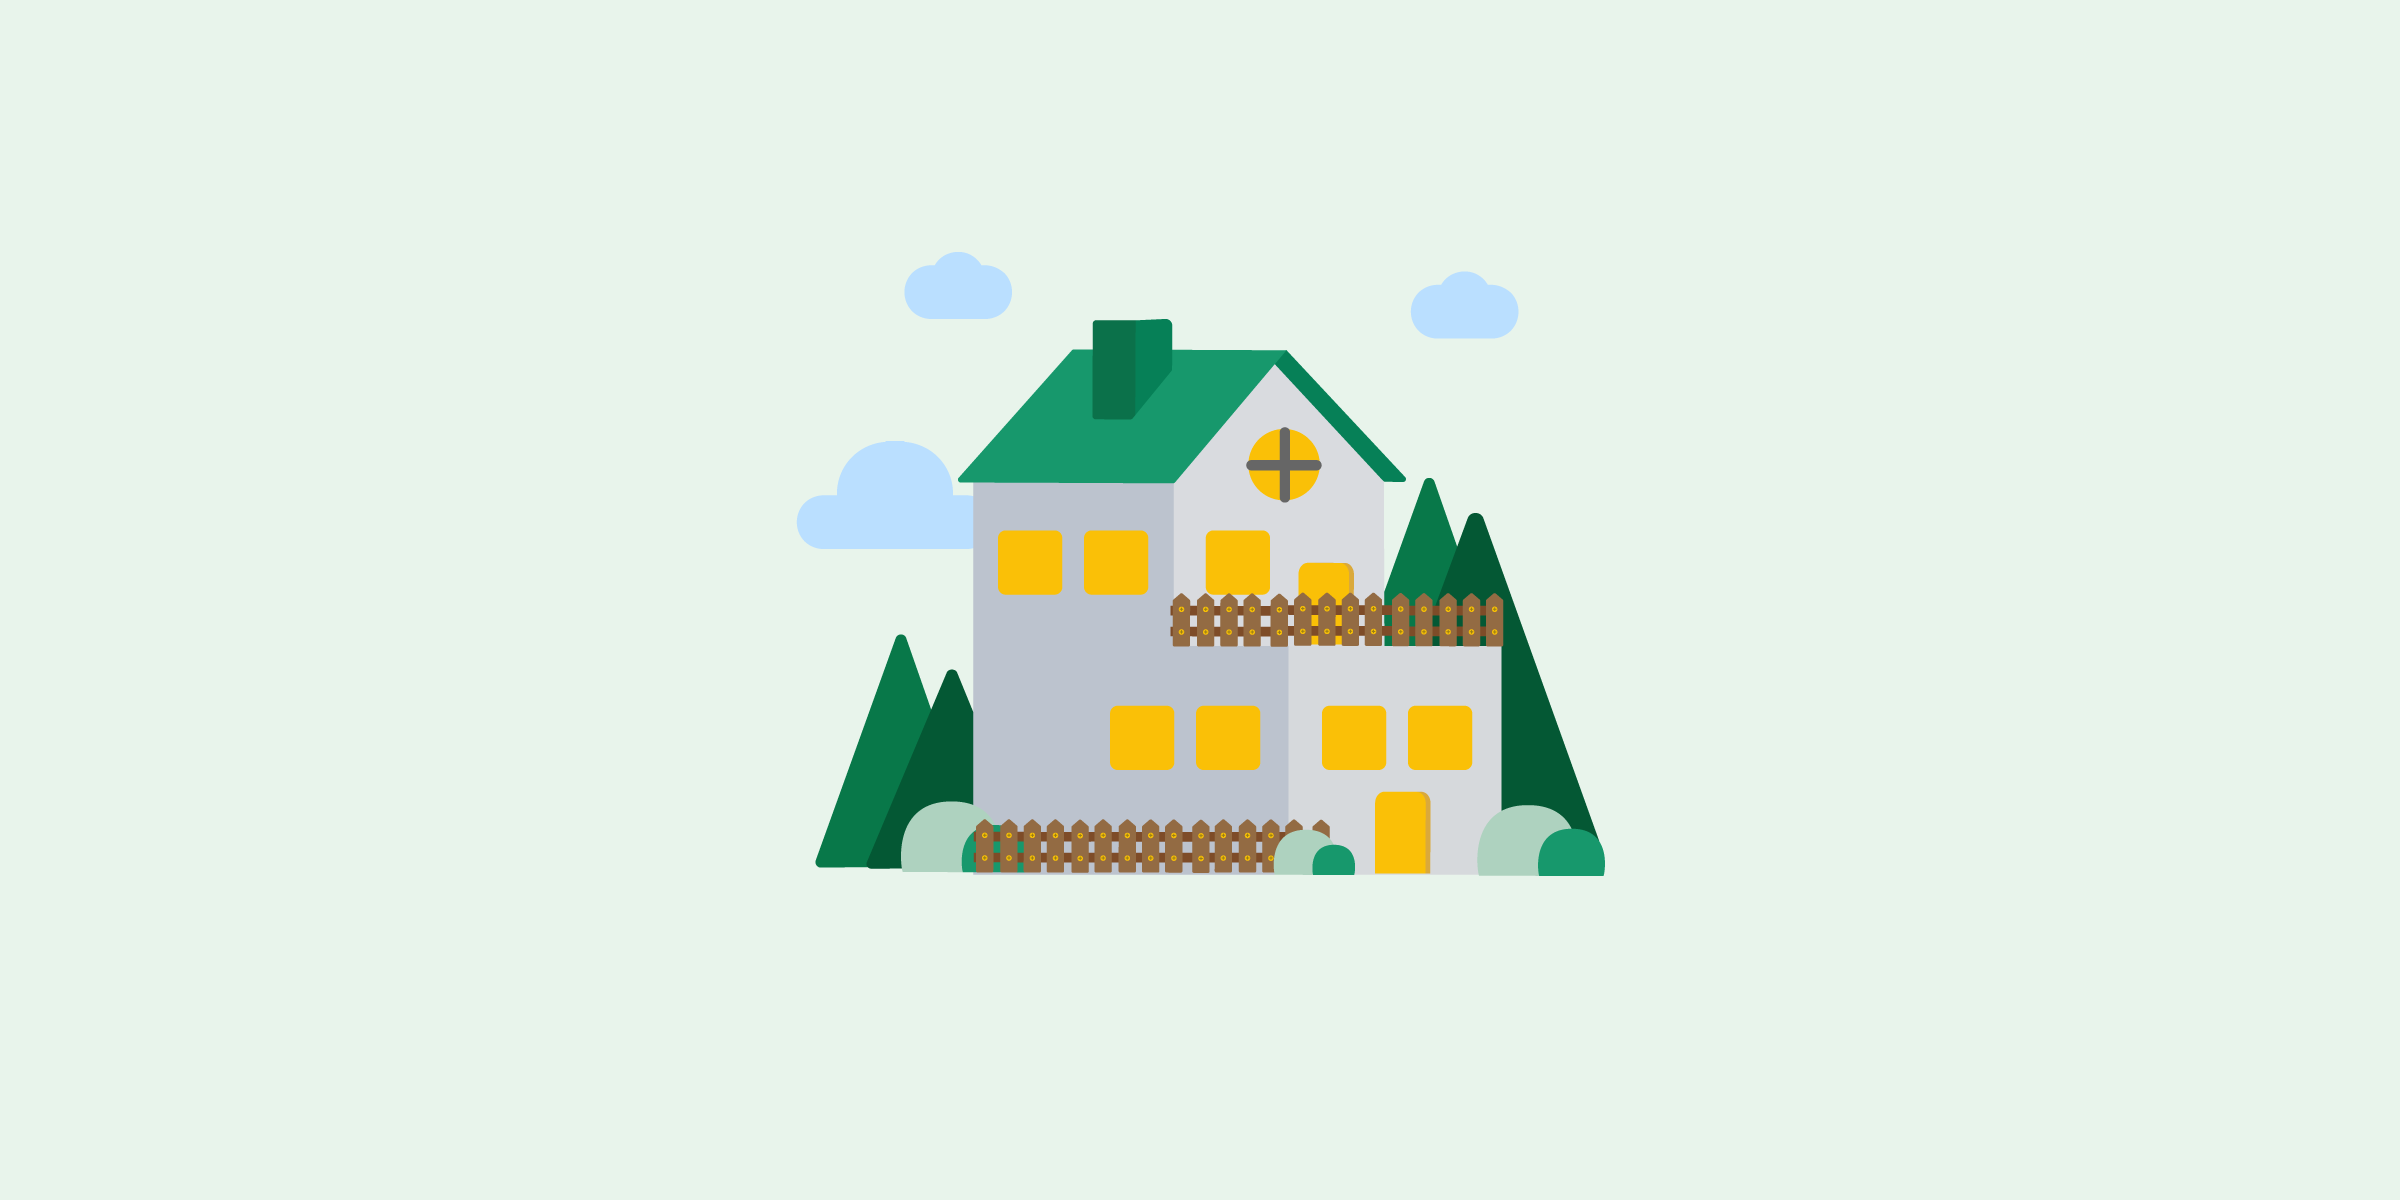 Ilustración de casa de 2 pisos con nubes y áreas verdes.